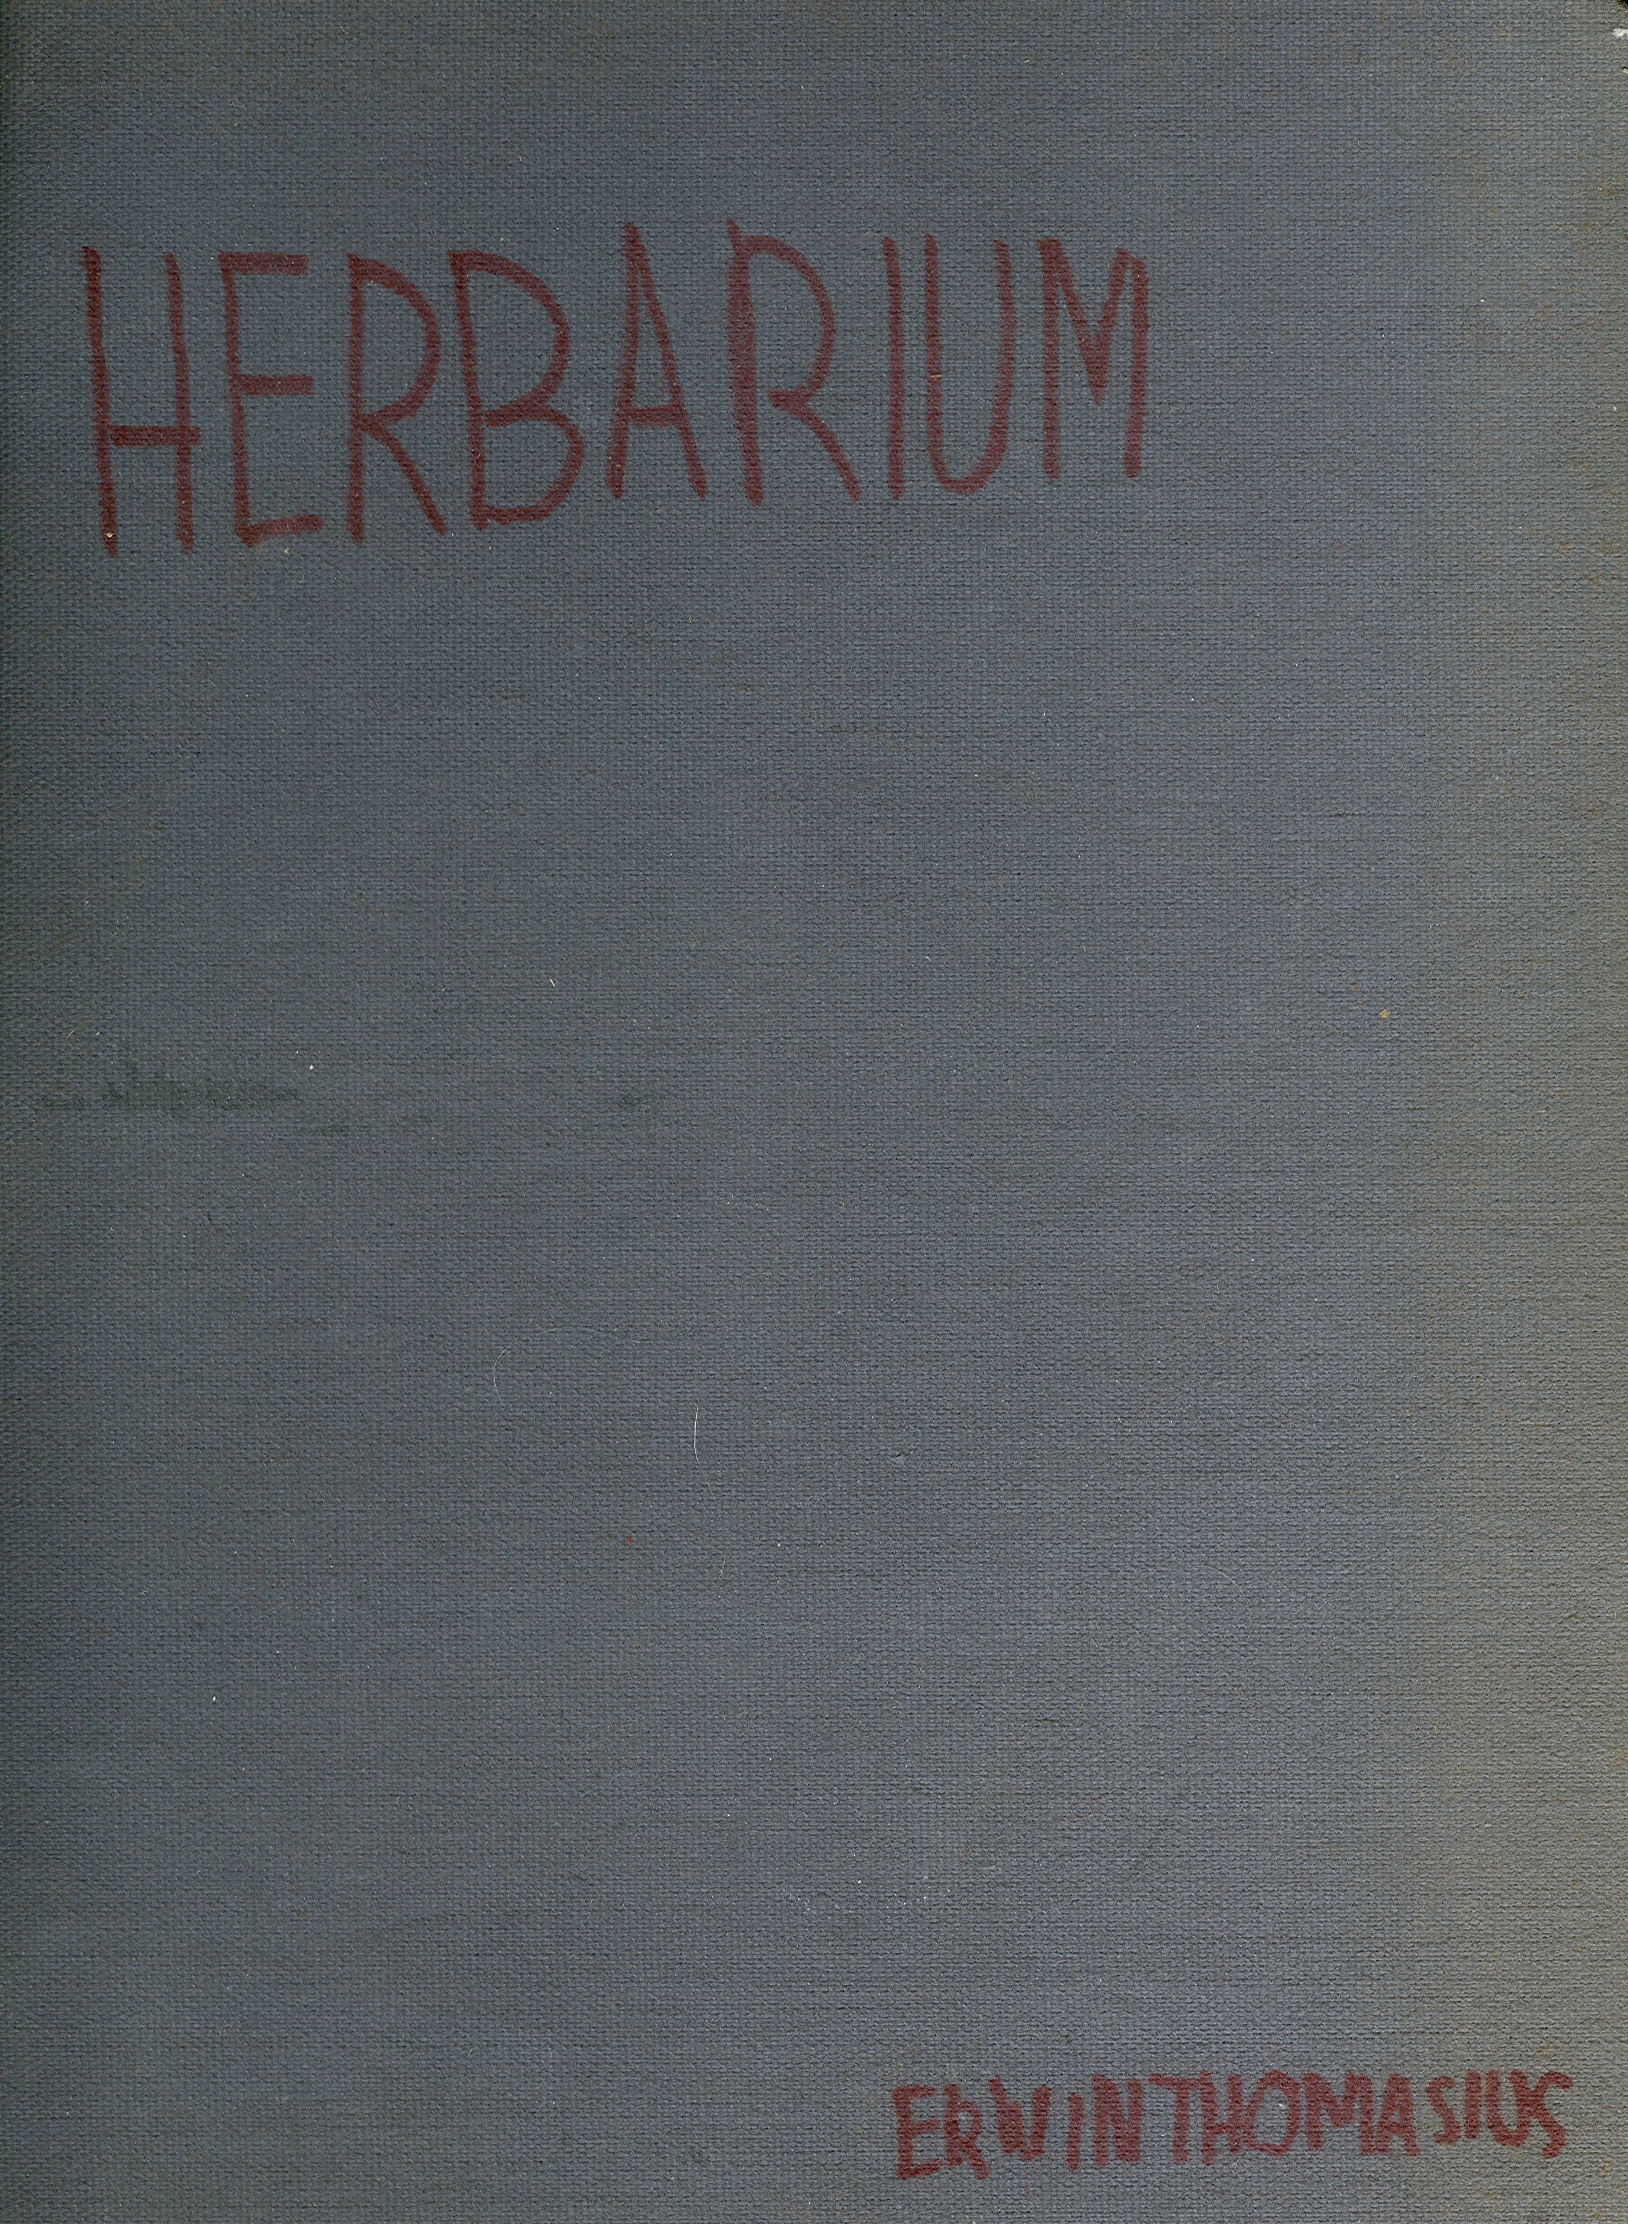 Eingescannt in Farbe: Der vordere Buchdeckel von meinem Herbarim aus dem Jahre 1965. Erwin Thomasius.